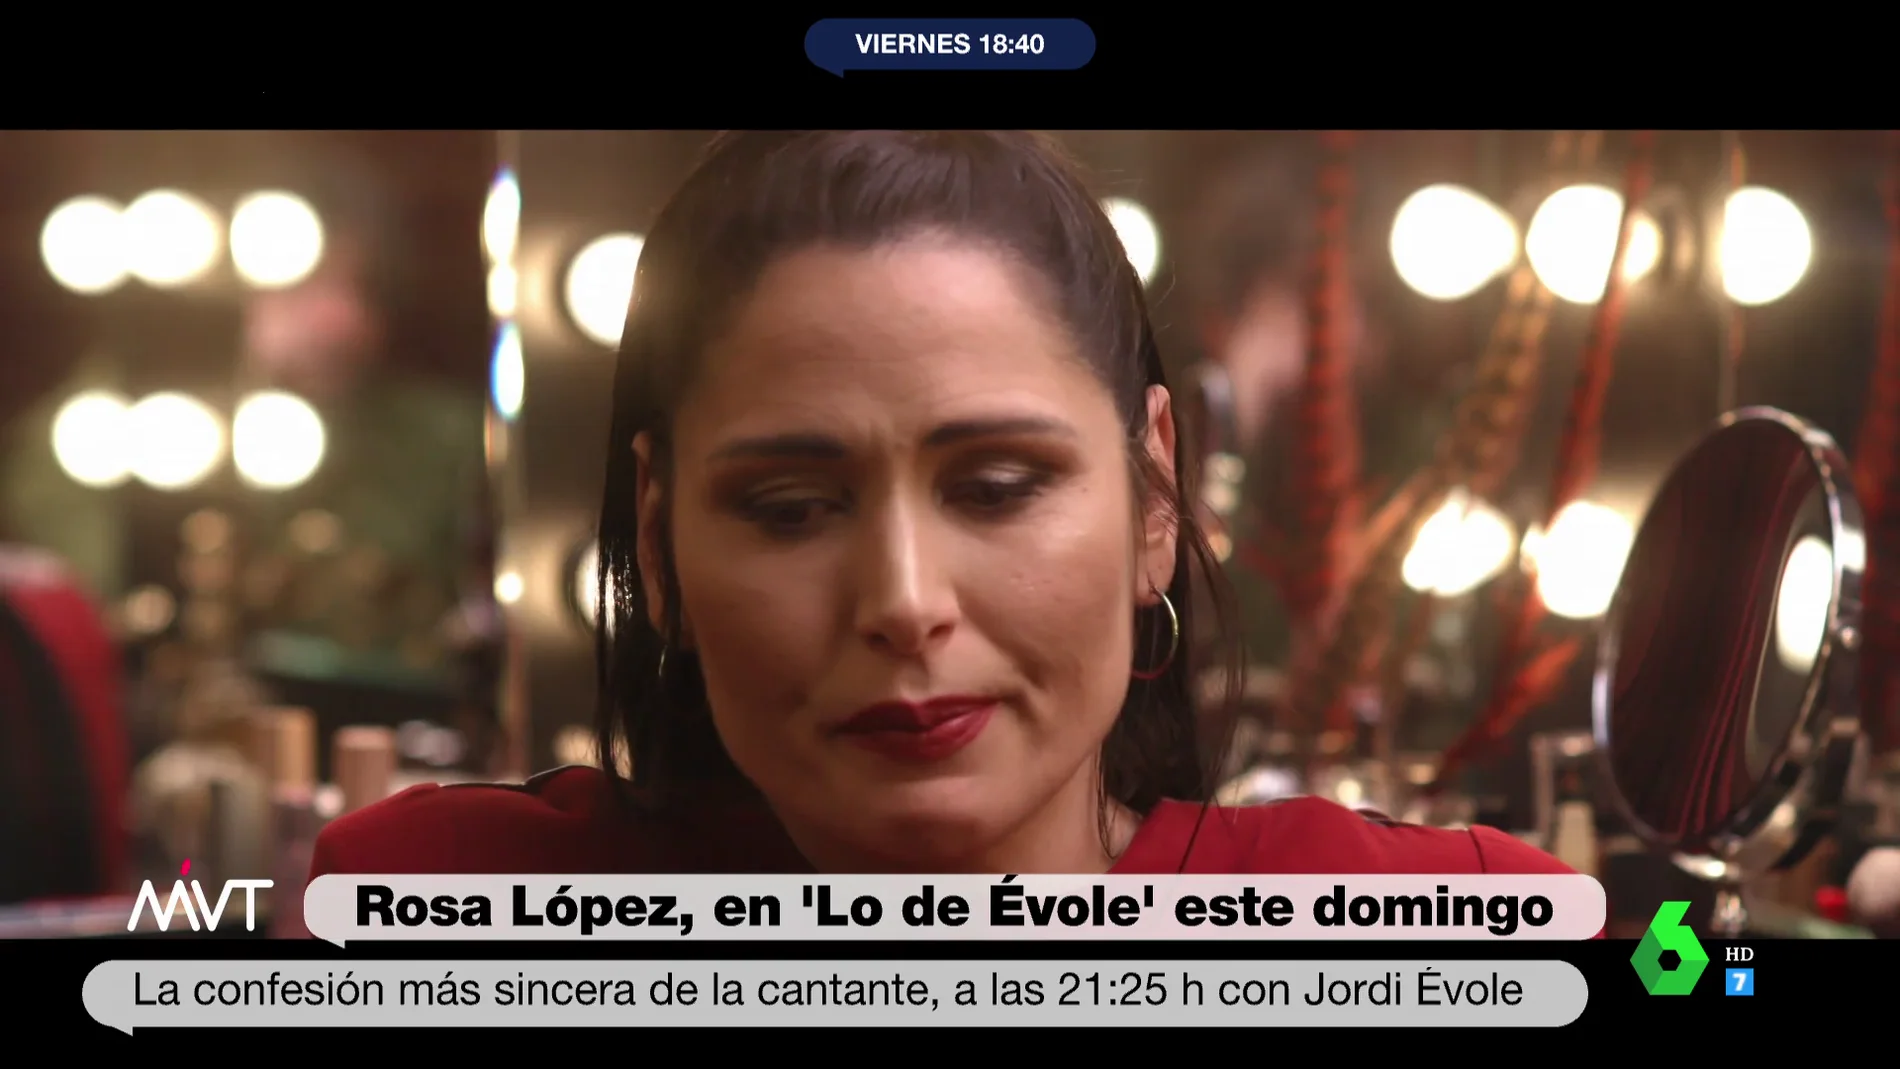 Rosa López habla claro del precio de la fama: "Me hubiera gustado sentir más empatía"